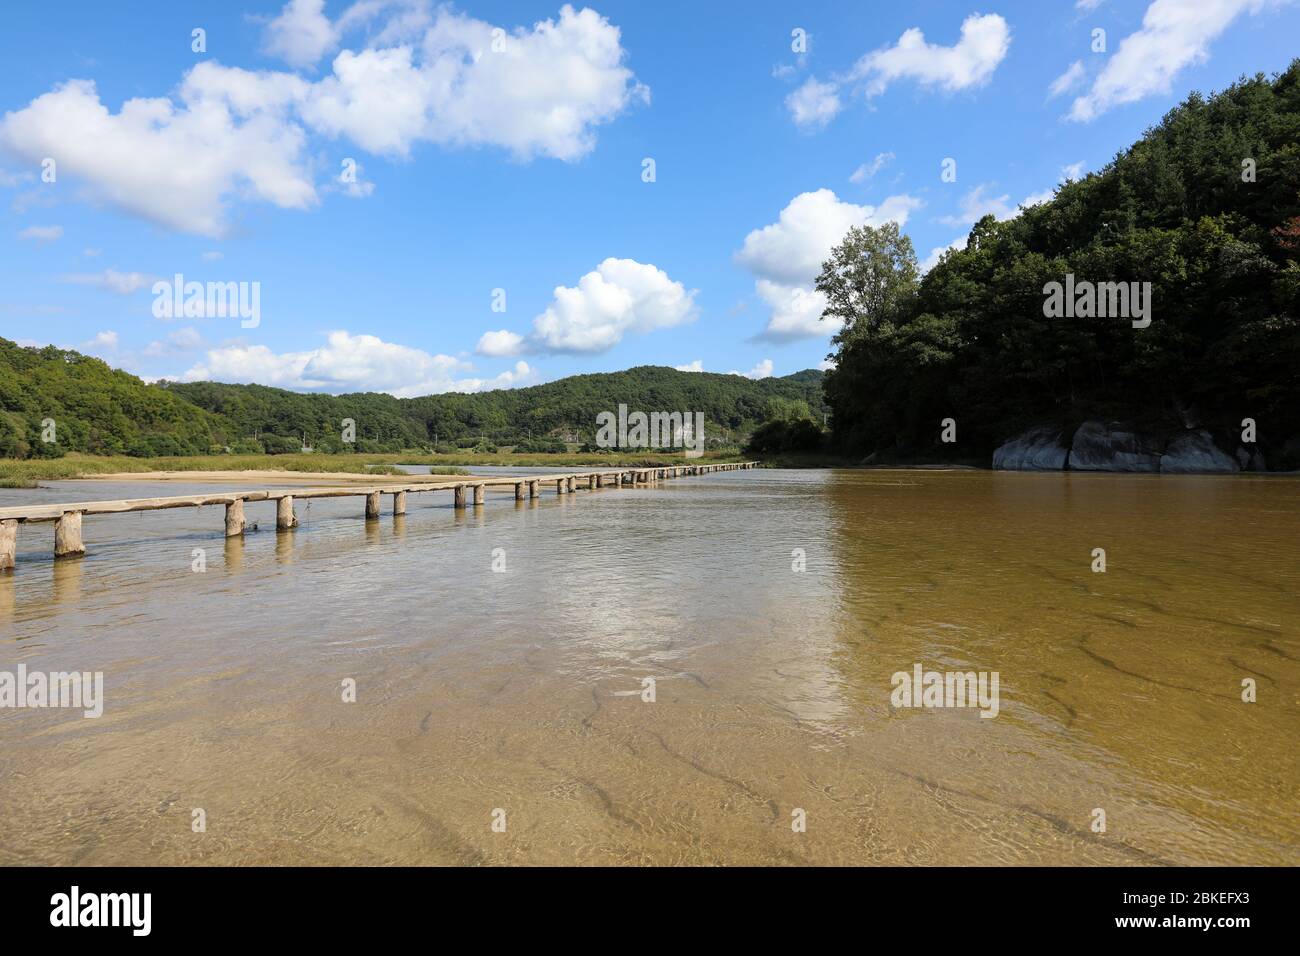 Ponte in legno sul fiume. Youngju, Corea del Sud. Foto Stock